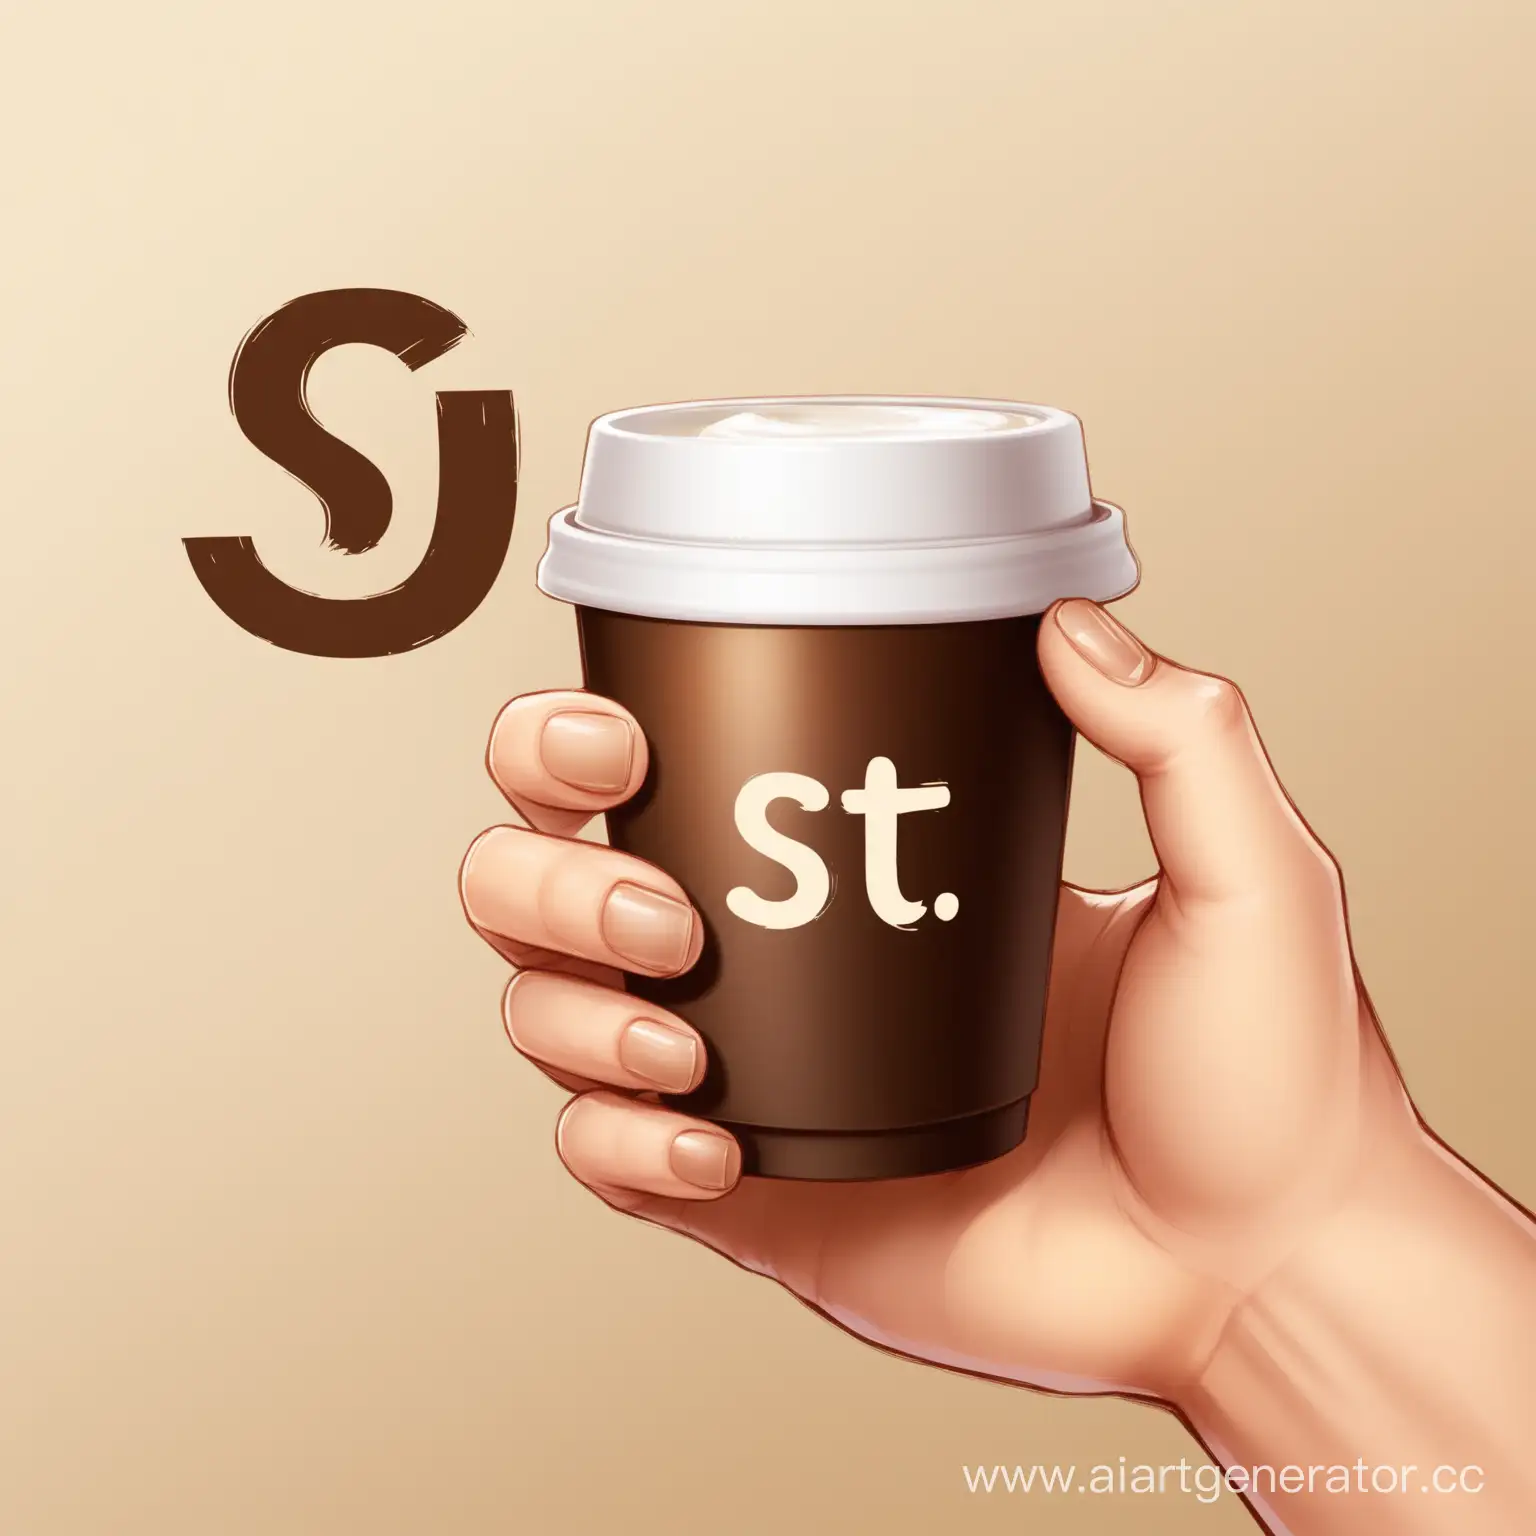 Рука держит стакан кофе с надписью "st"
